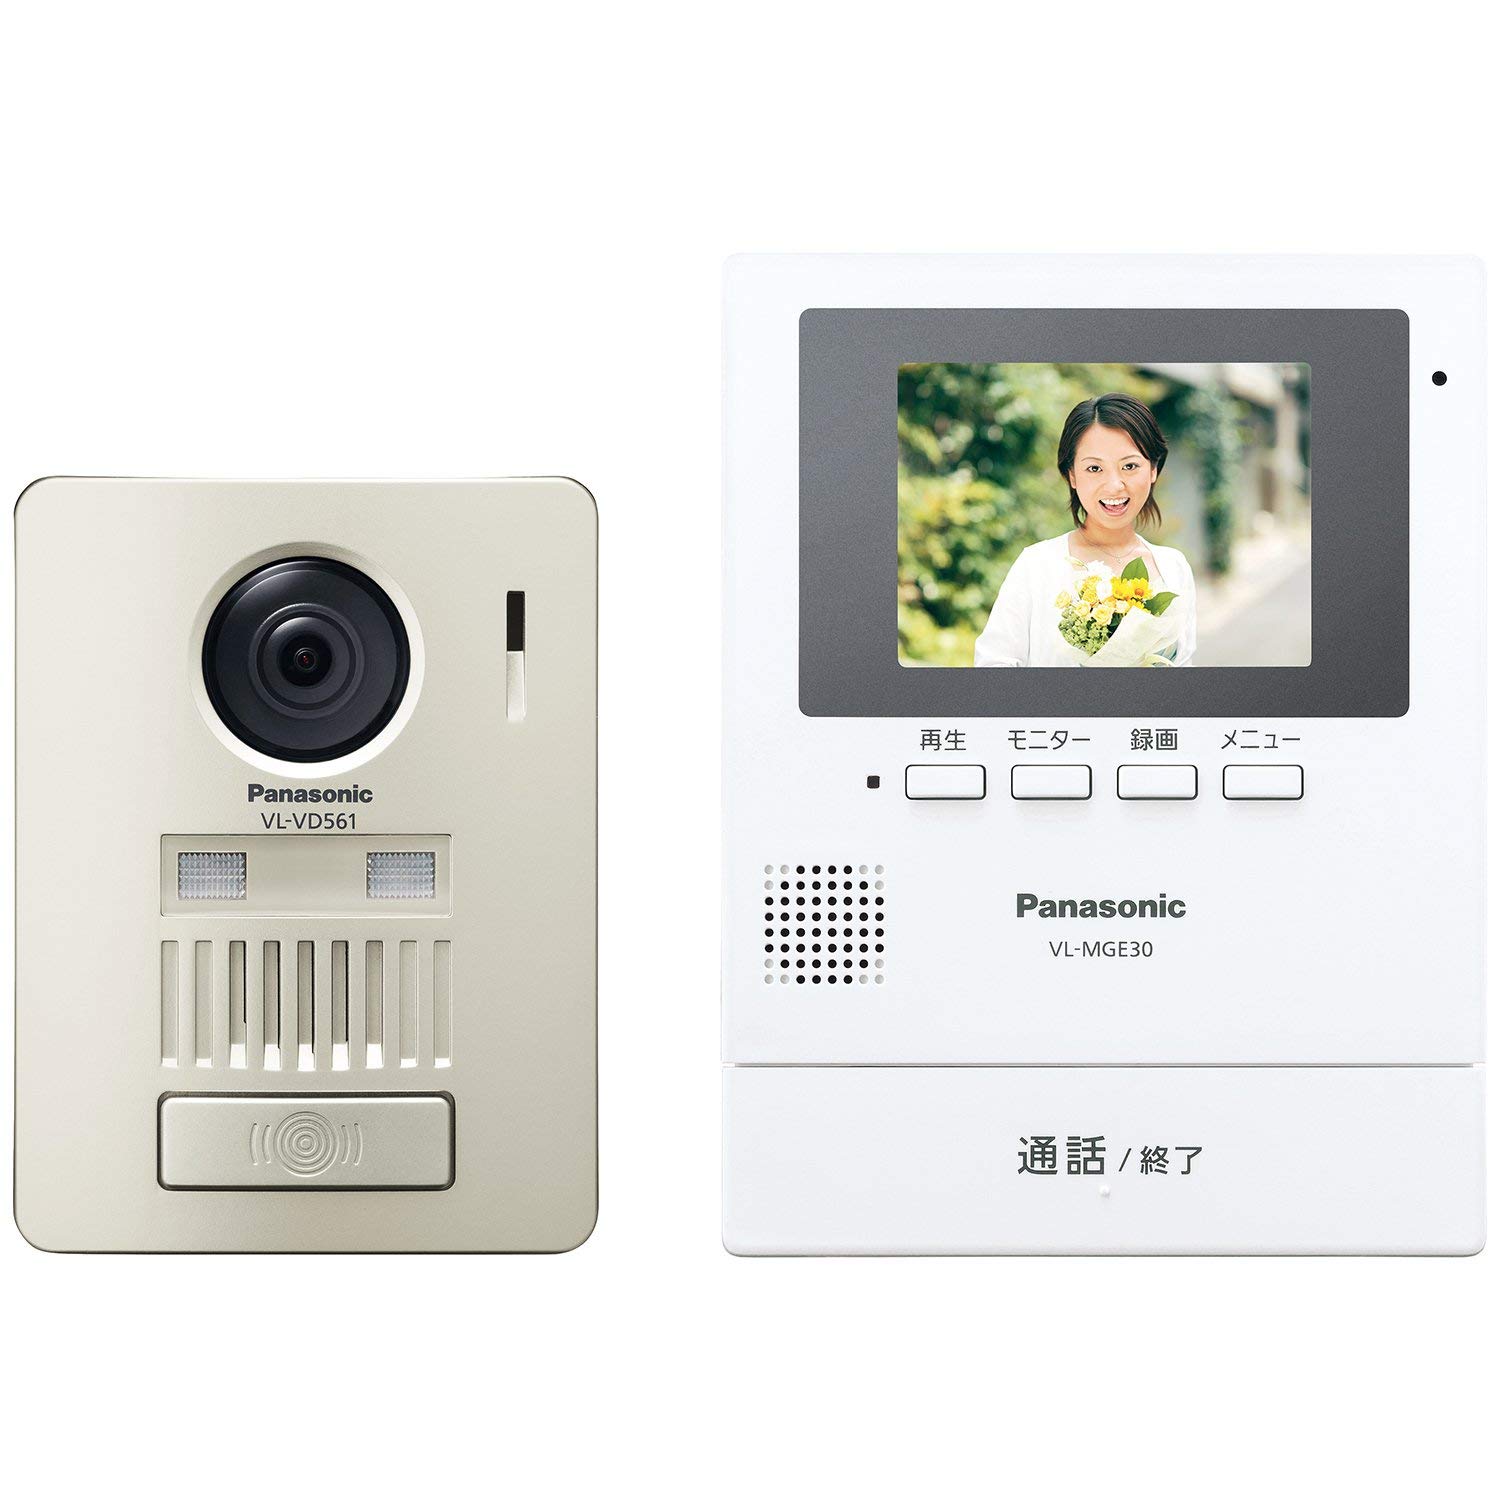 刷卡價 日本公司貨 國際牌 Panasonic VL-SE30KL 視訊門鈴 3.5吋 LED照明 錄影 火災報知機能 日本必買代購